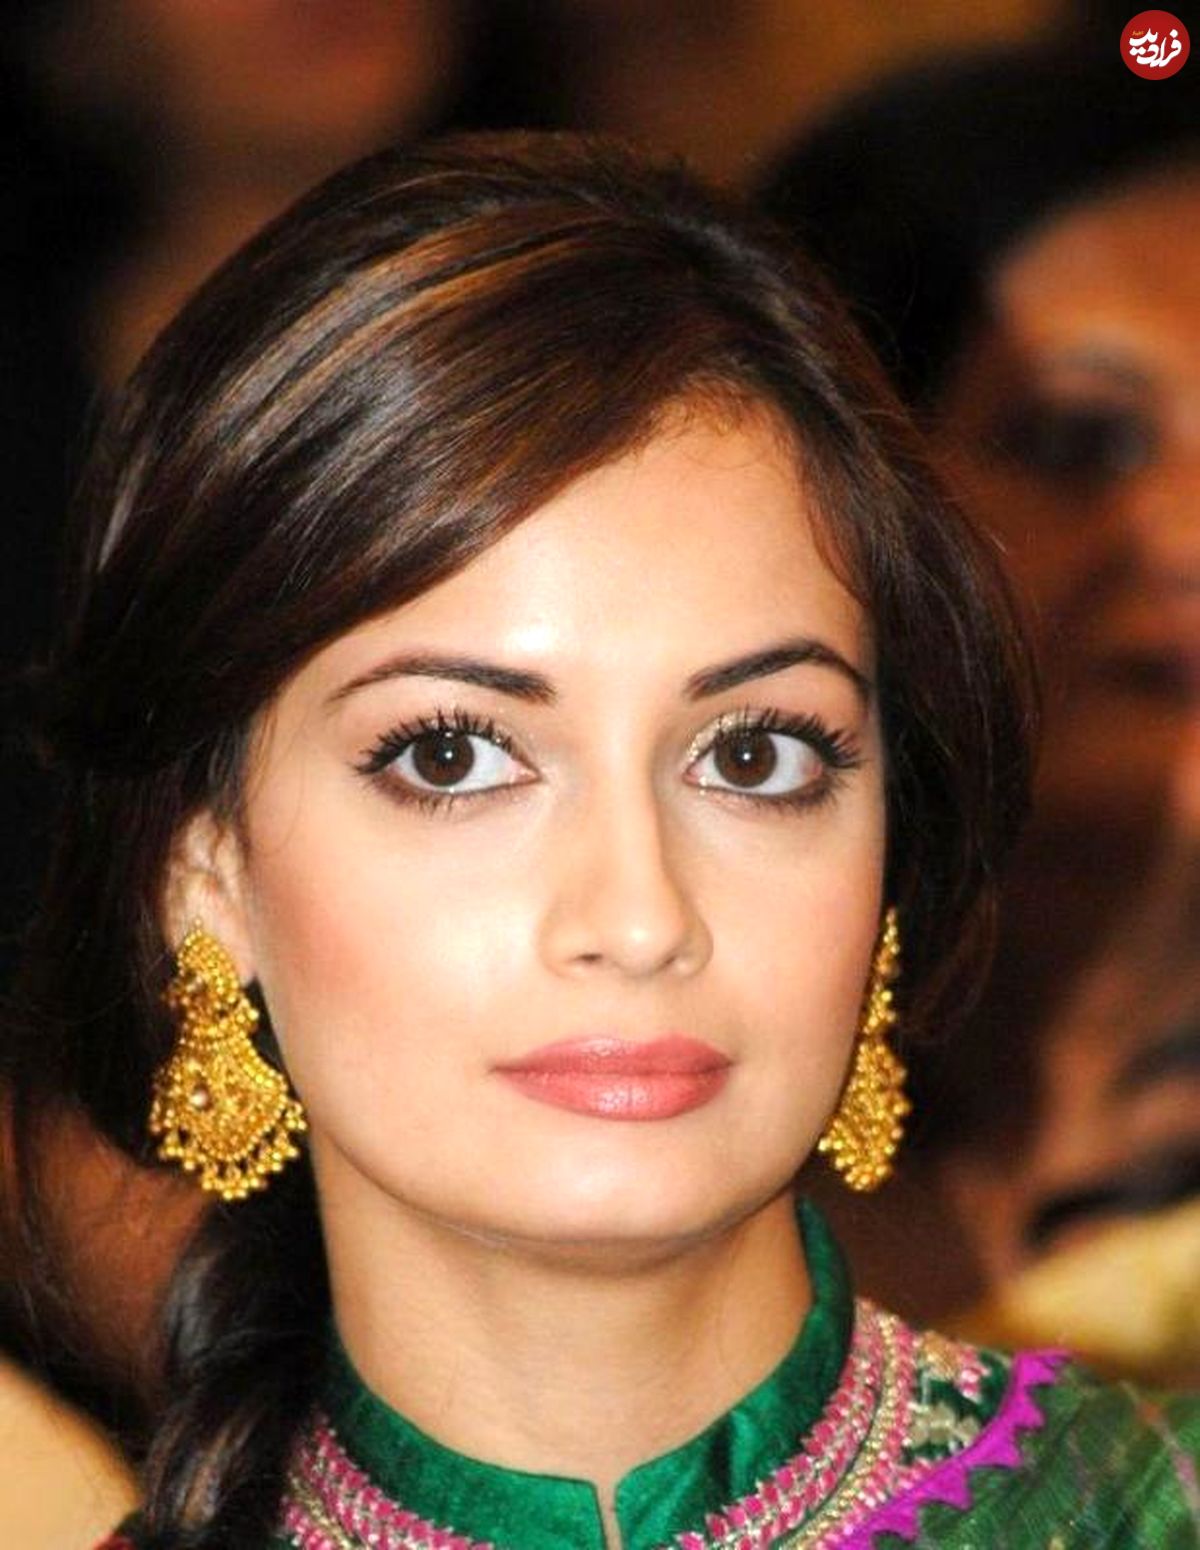 ملکه زیبایی هند در یک فیلم ایرانی